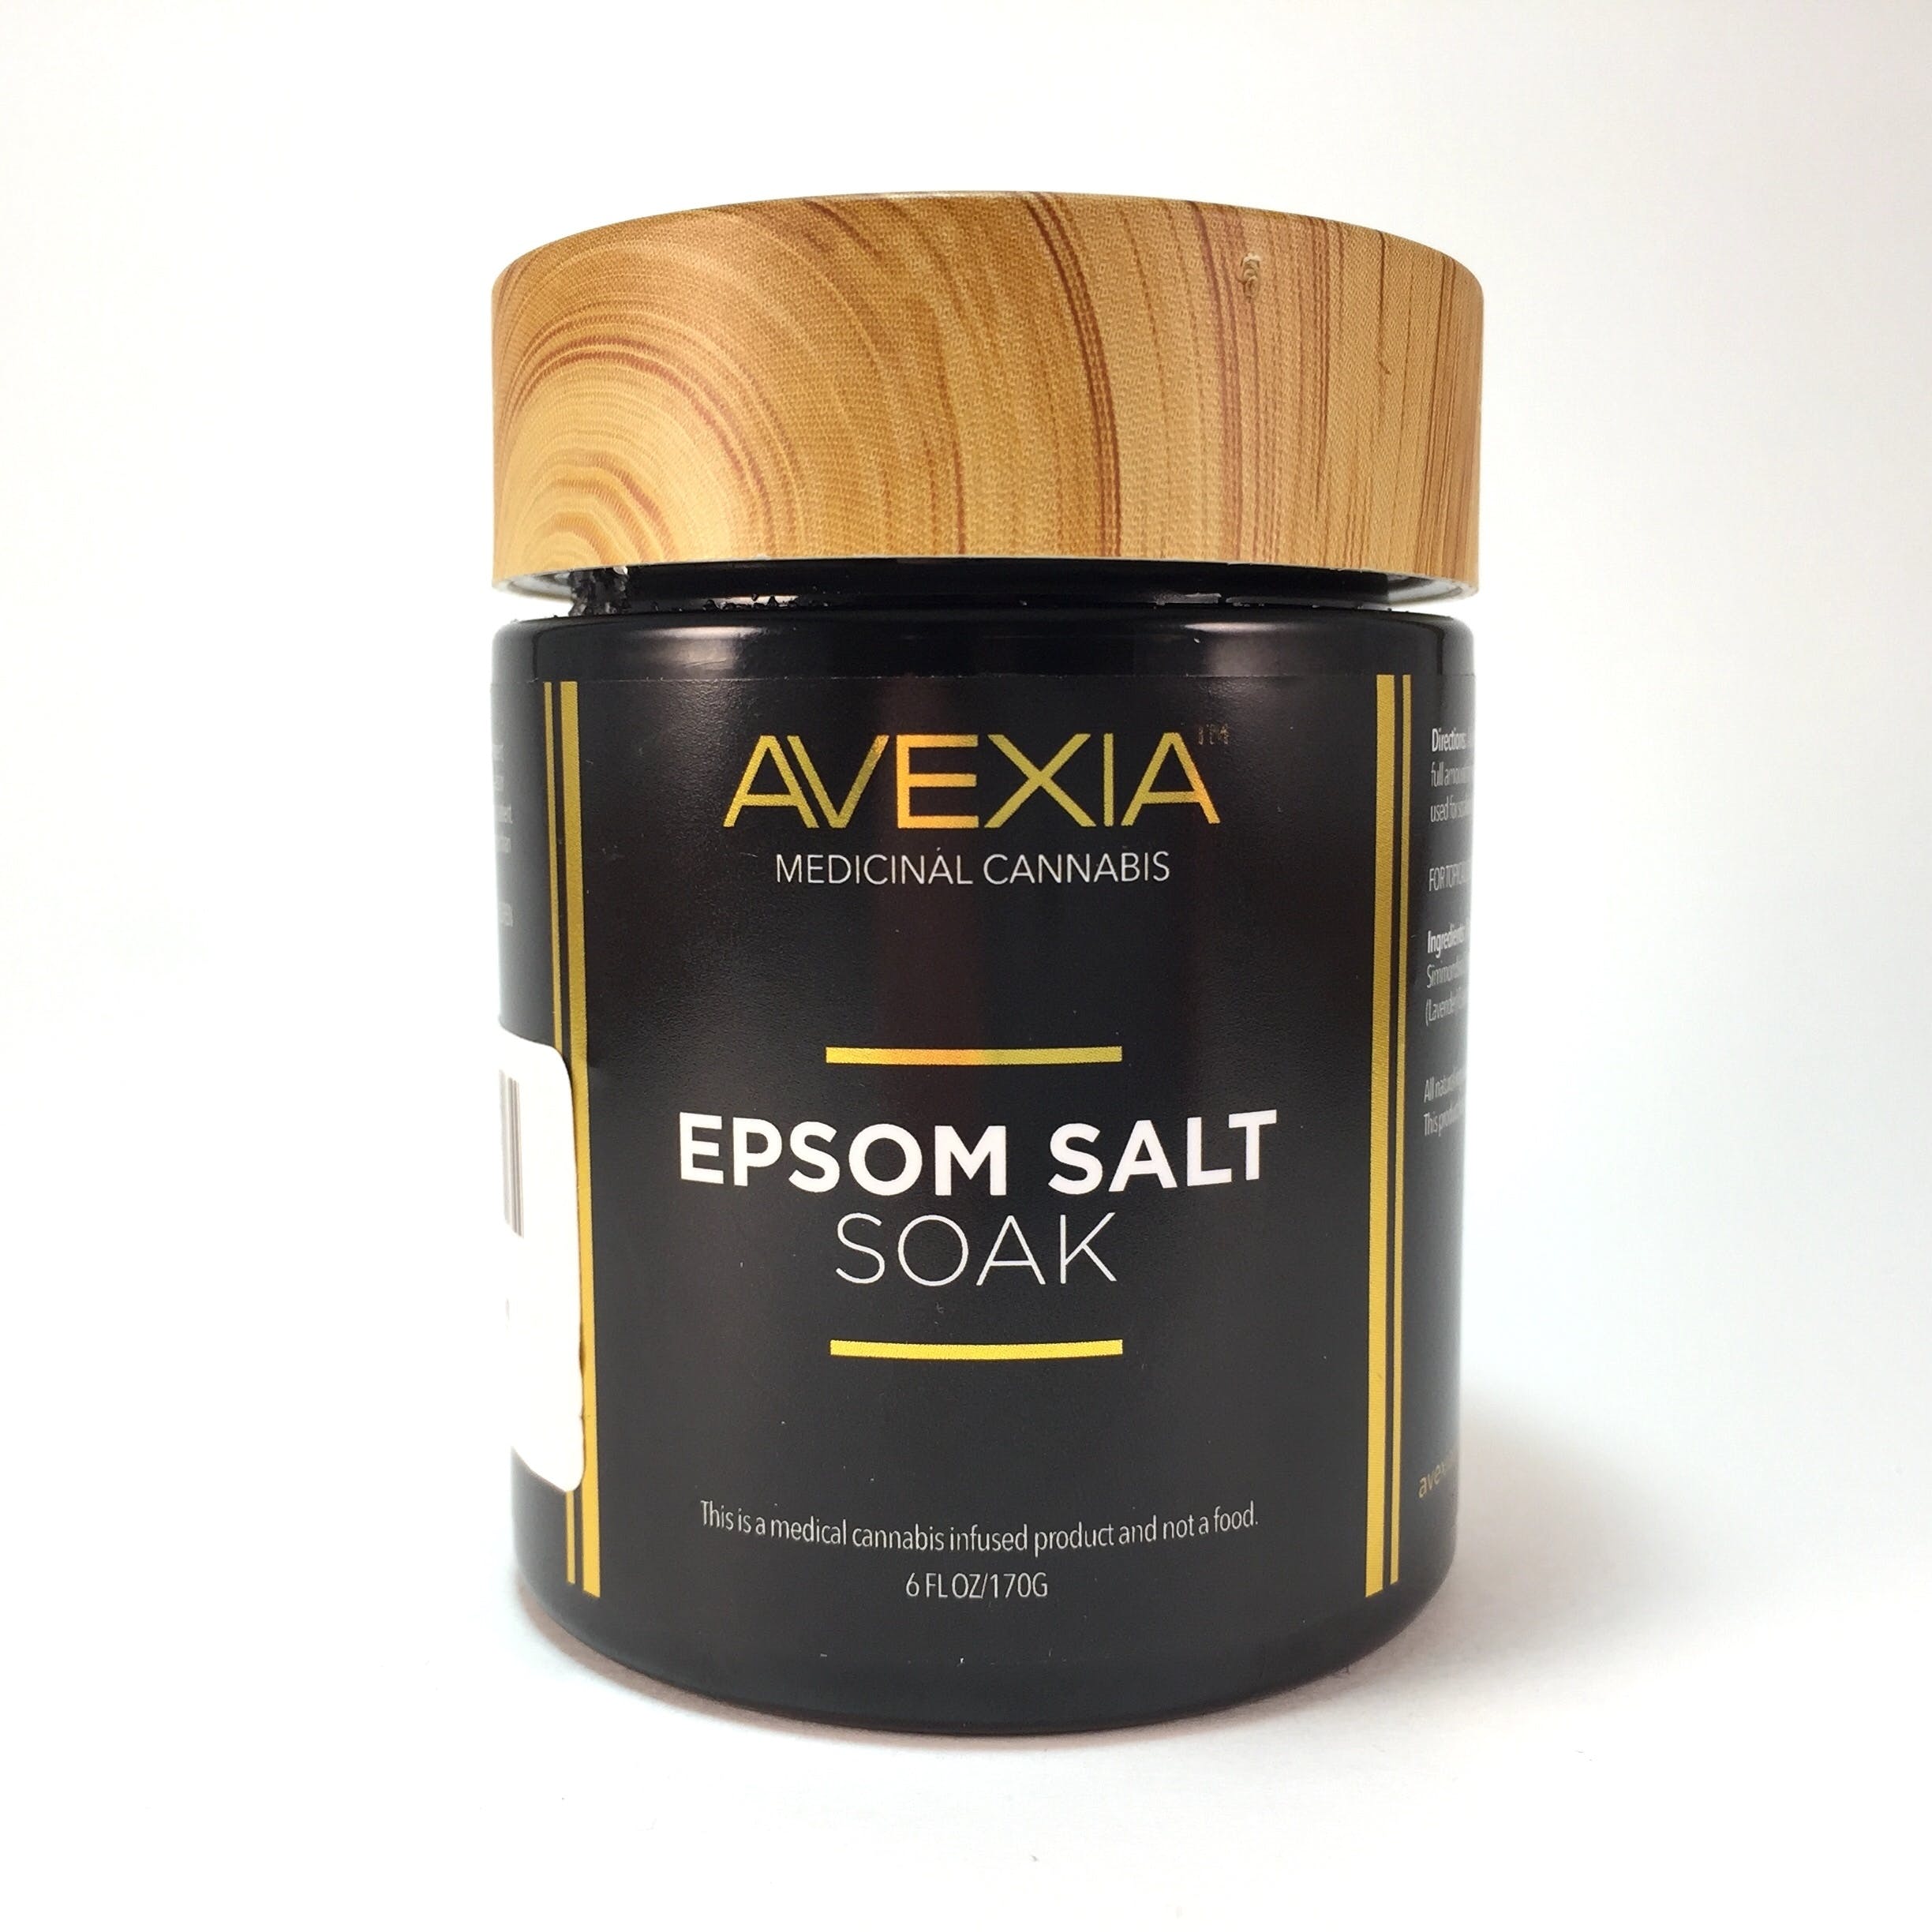 Verano Avexia Epsom Bath Salt